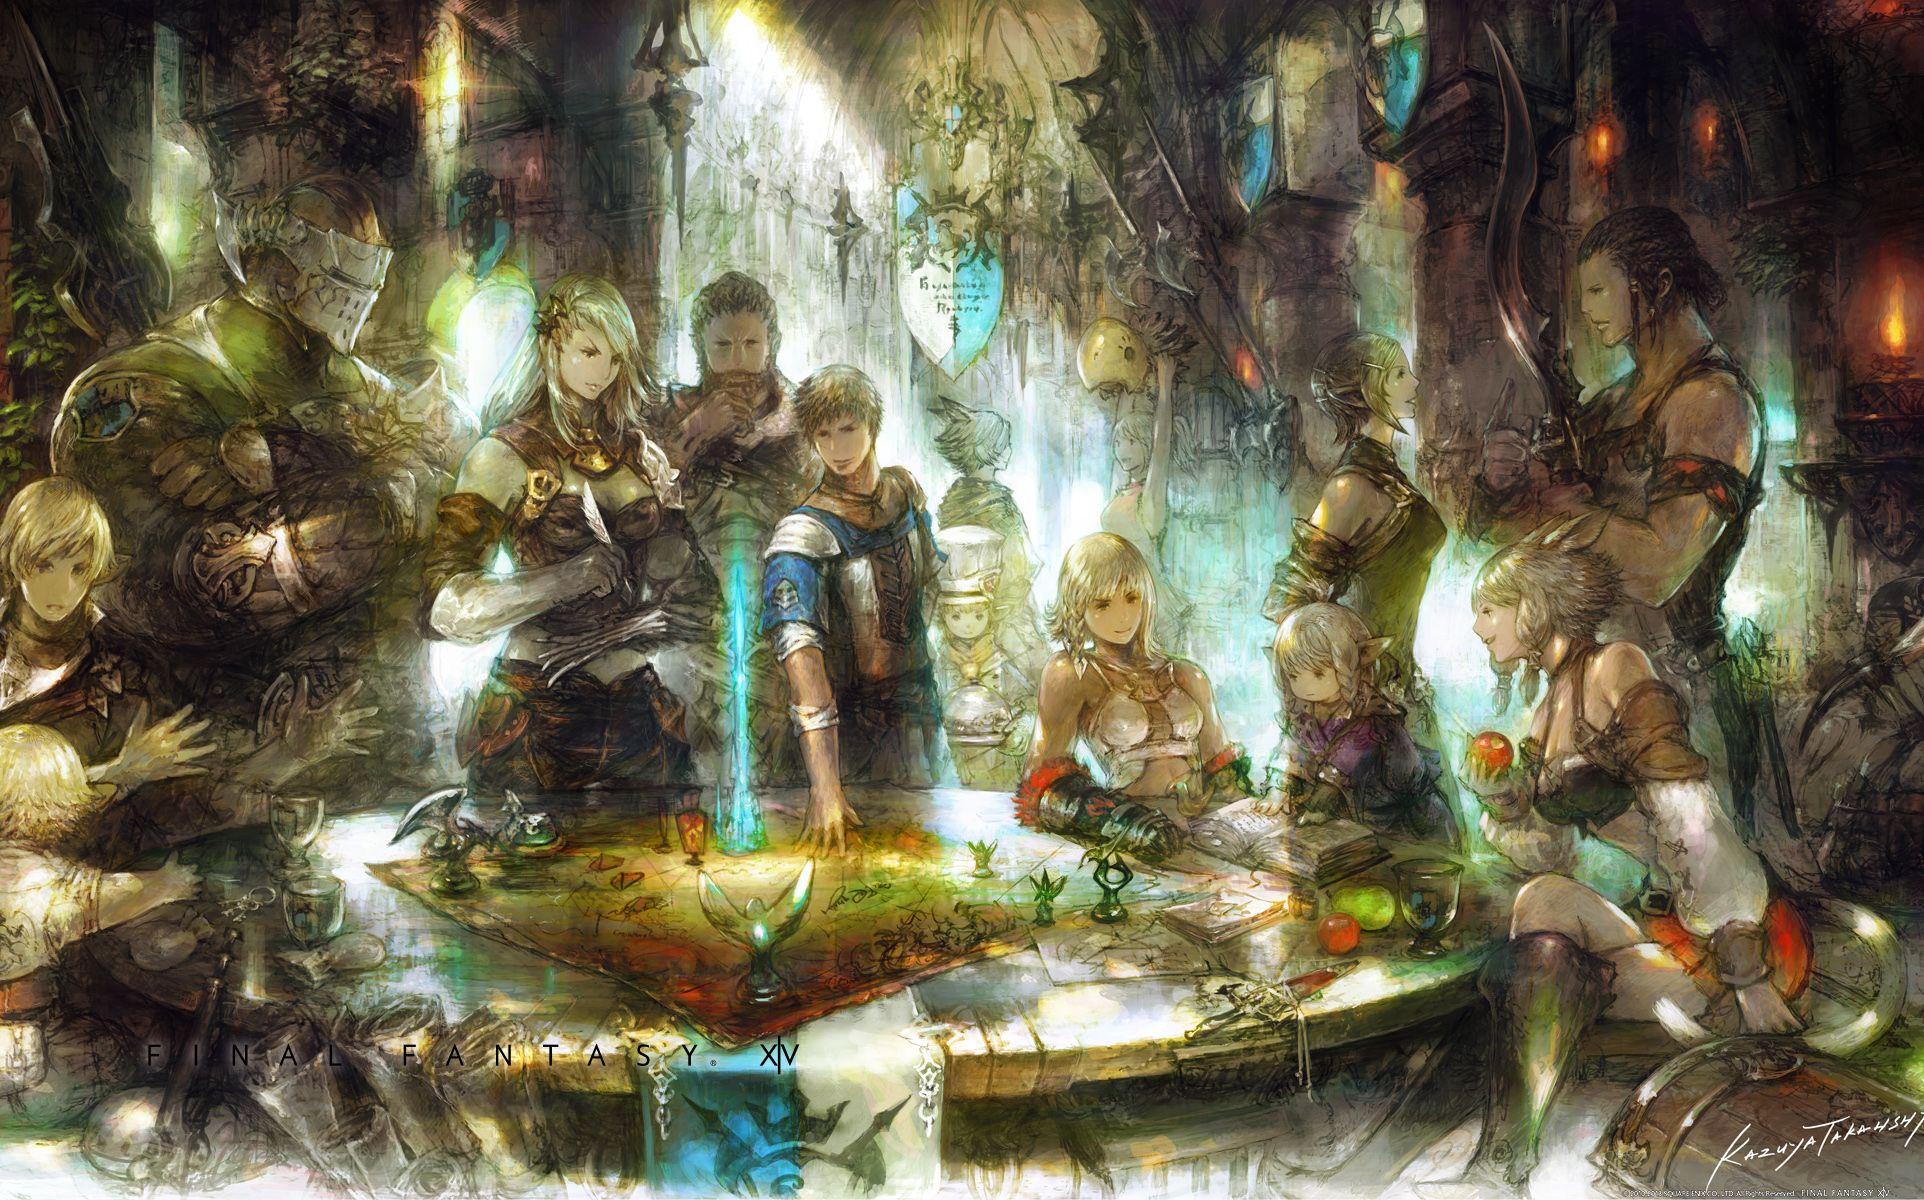 Final Fantasy XV Wallpaper, Picture, Image